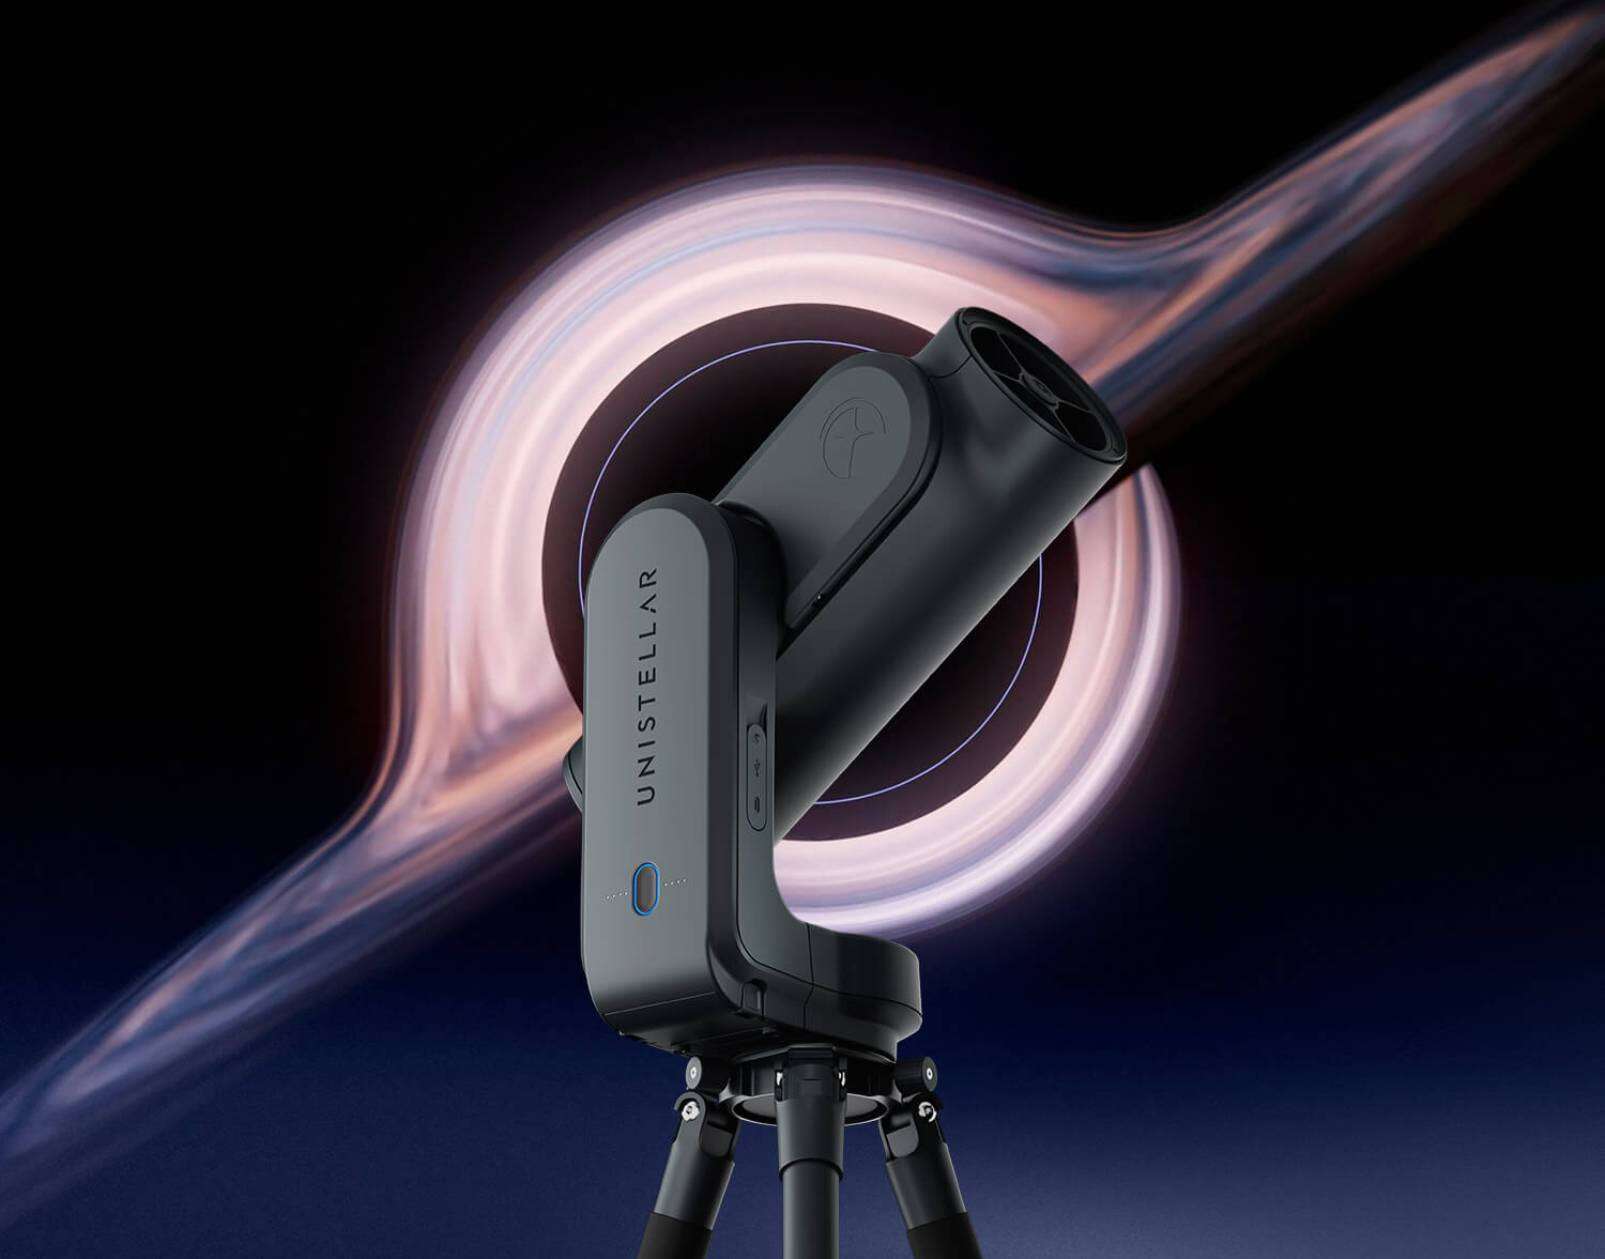 Odyssey, nowy inteligentny teleskop elektroniczny firmy Unistellar dla każdego